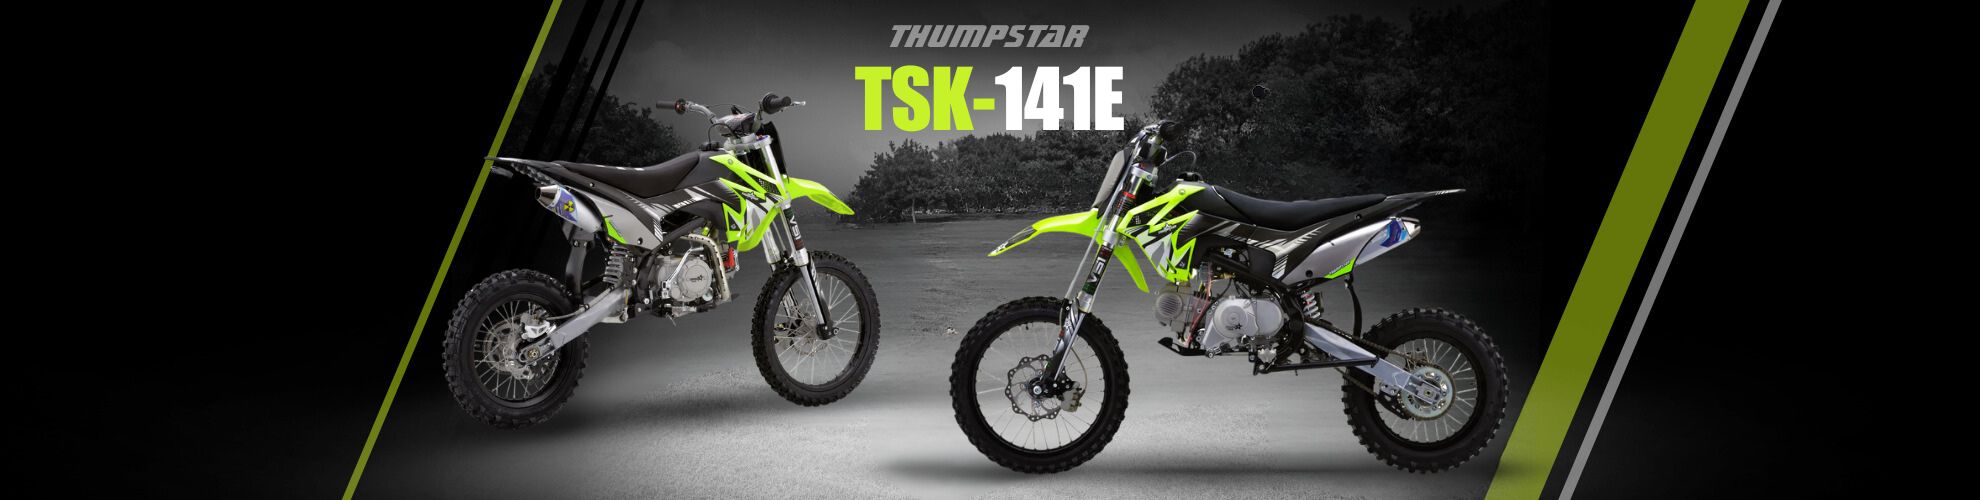 Thumpstar - TSK 141E Dirt Bike Banner for Desktop